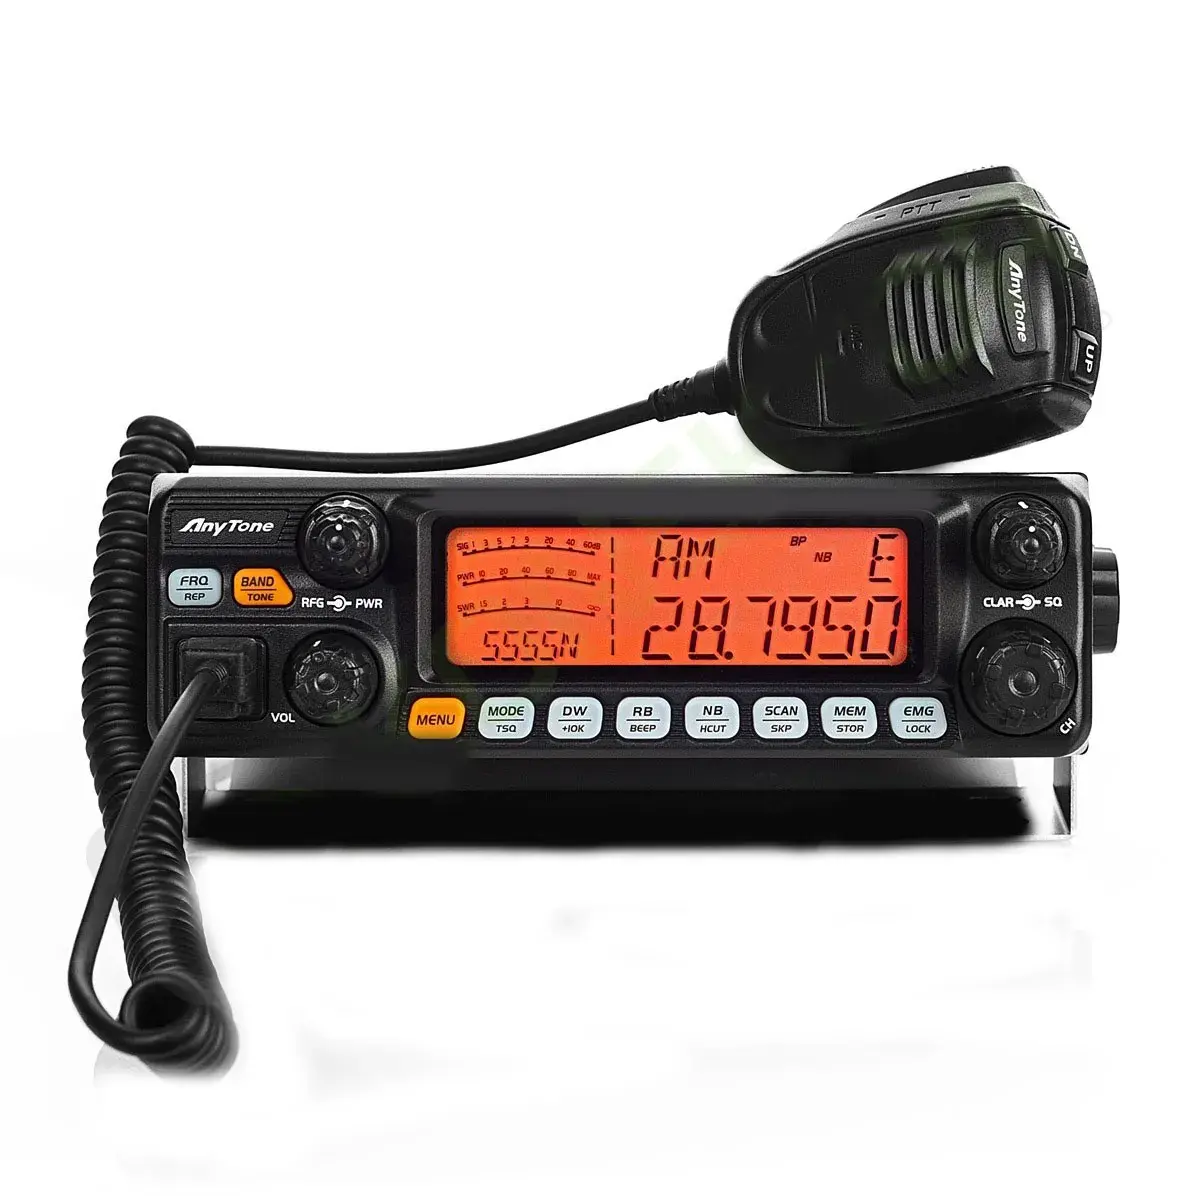 एनीटोन AT5555N II हाई पावर आउटपुट 60W AM PEP 50W FM 60W SSB CT28.000-29.700MHz रेडियो 40 चैनल मोबाइल ट्रांसीवर